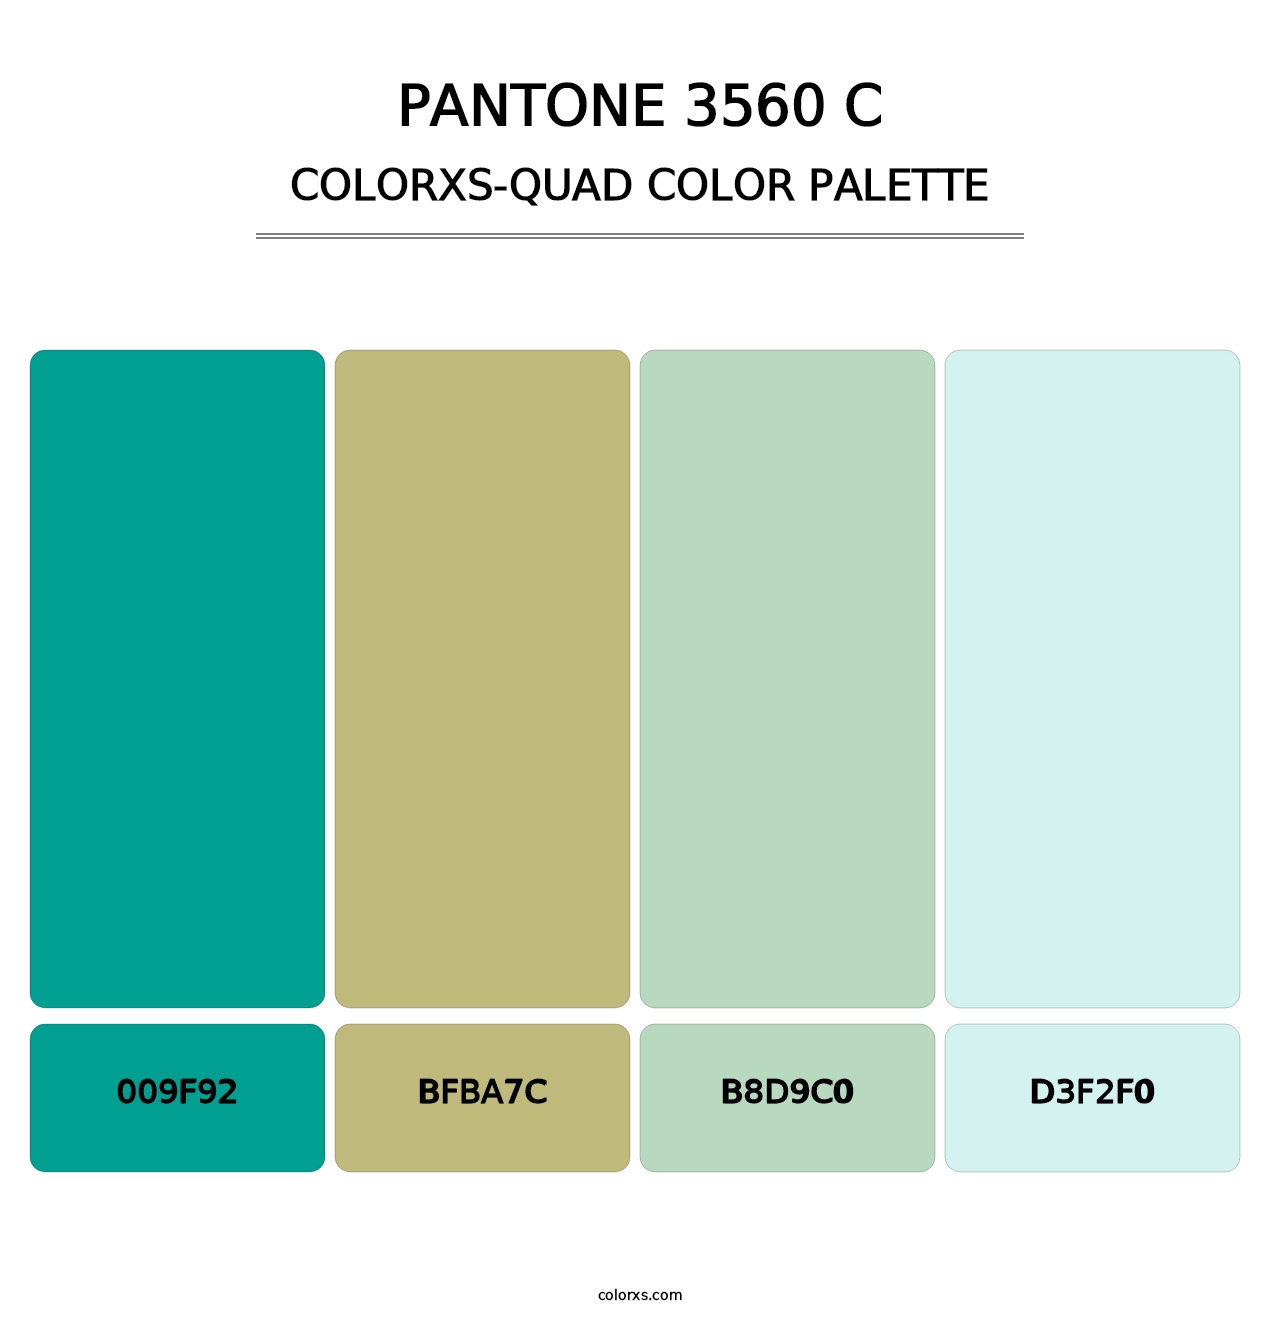 PANTONE 3560 C - Colorxs Quad Palette